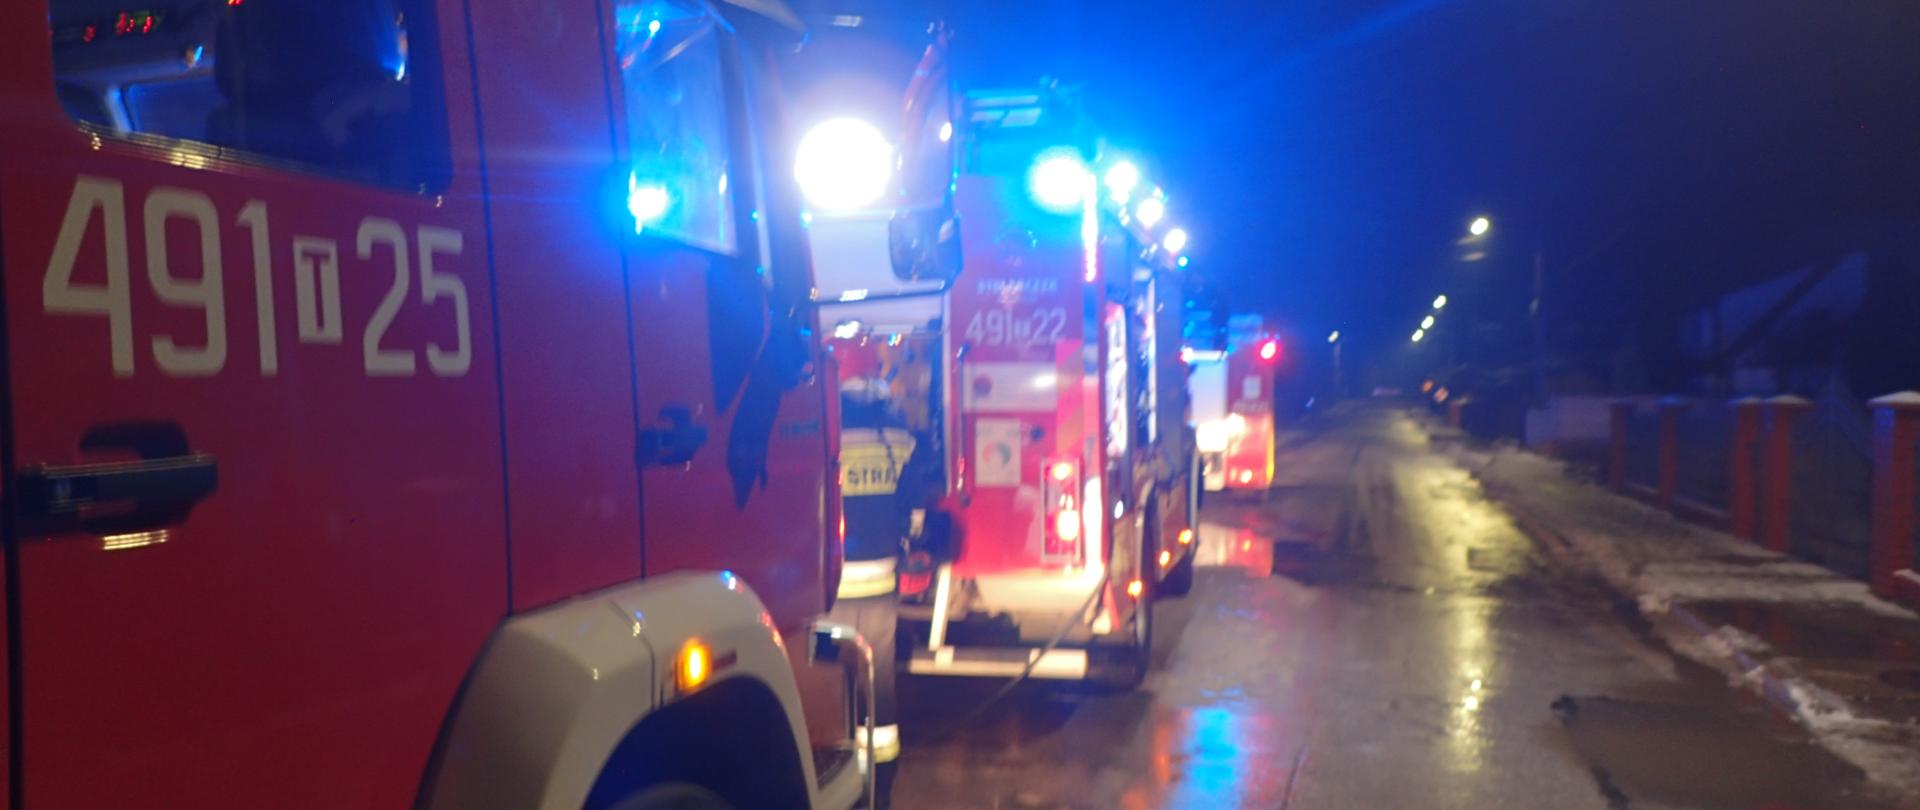 Samochody pożarnicze zaparkowane na ulicy z włączonymi sygnałami świetlnymi, pora nocna